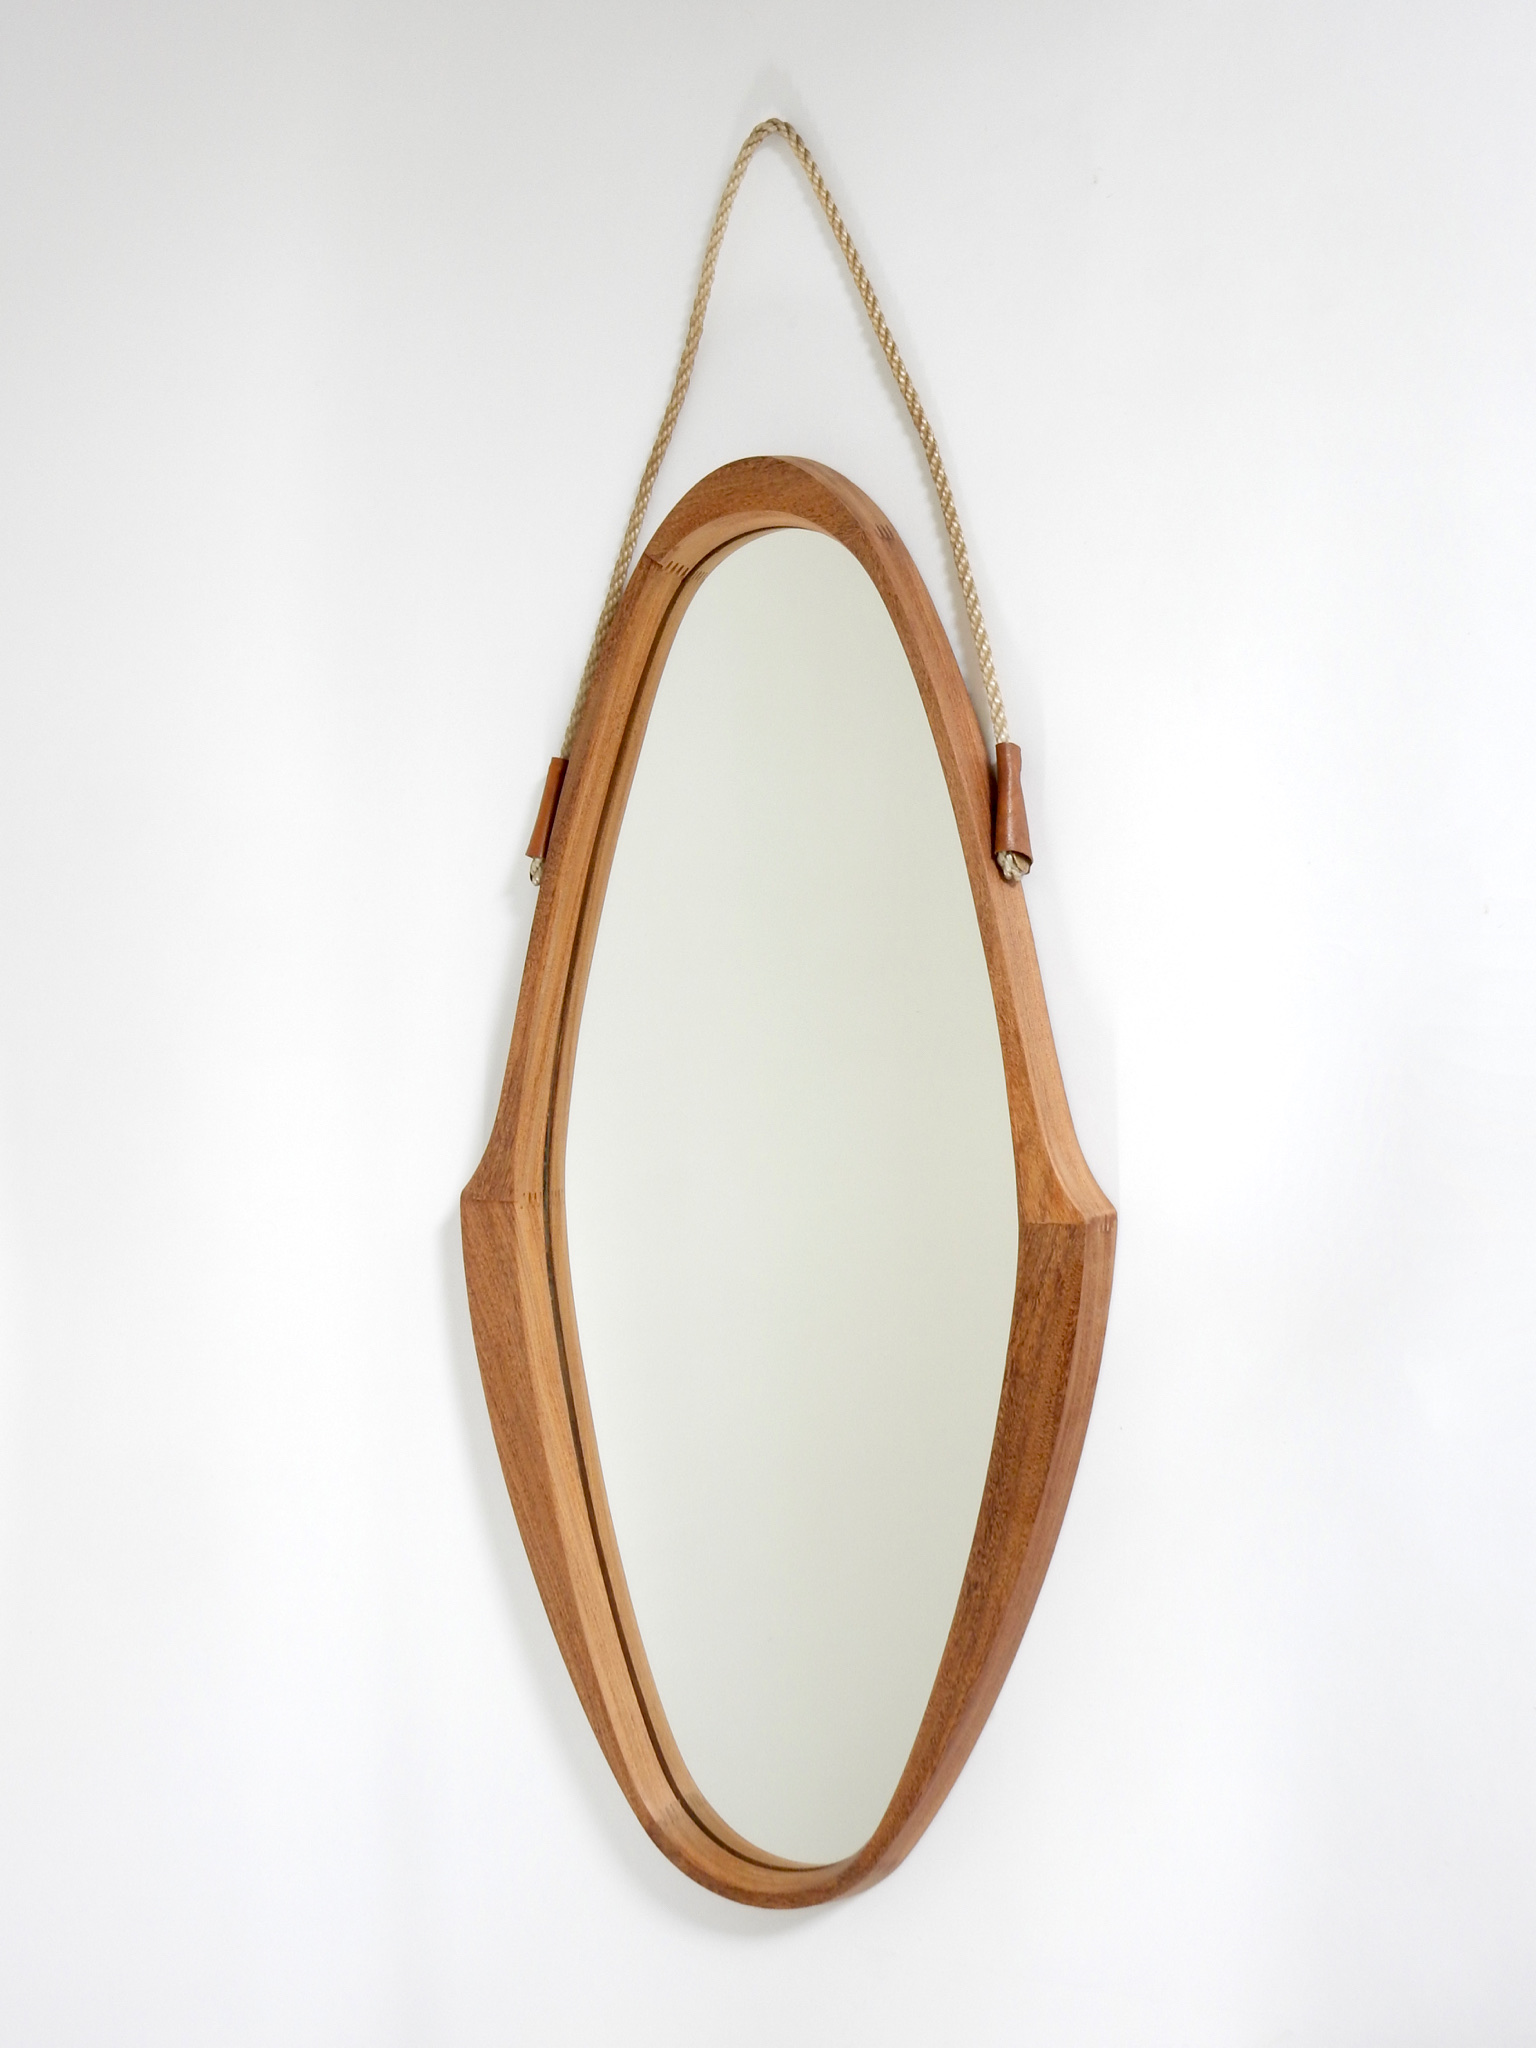 Sold - Wooden Mirror